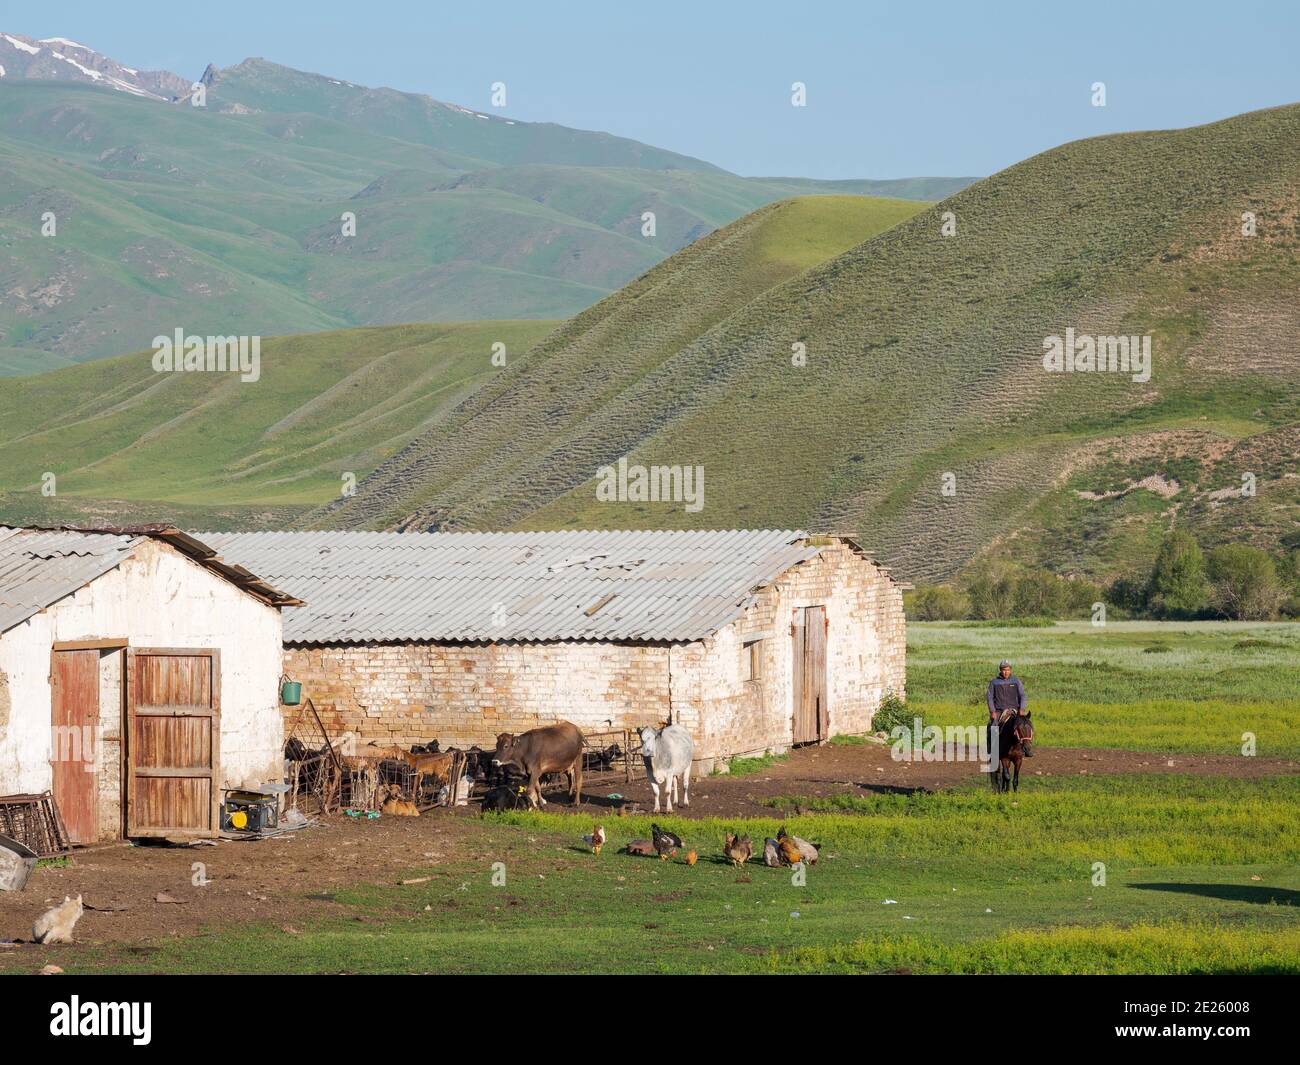 Ein typischer Bauernhof in der Suusamyr Ebene, einem Hochtal in den Tien Shan Bergen. Asien, Zentralasien, Kirgisistan Stockfoto